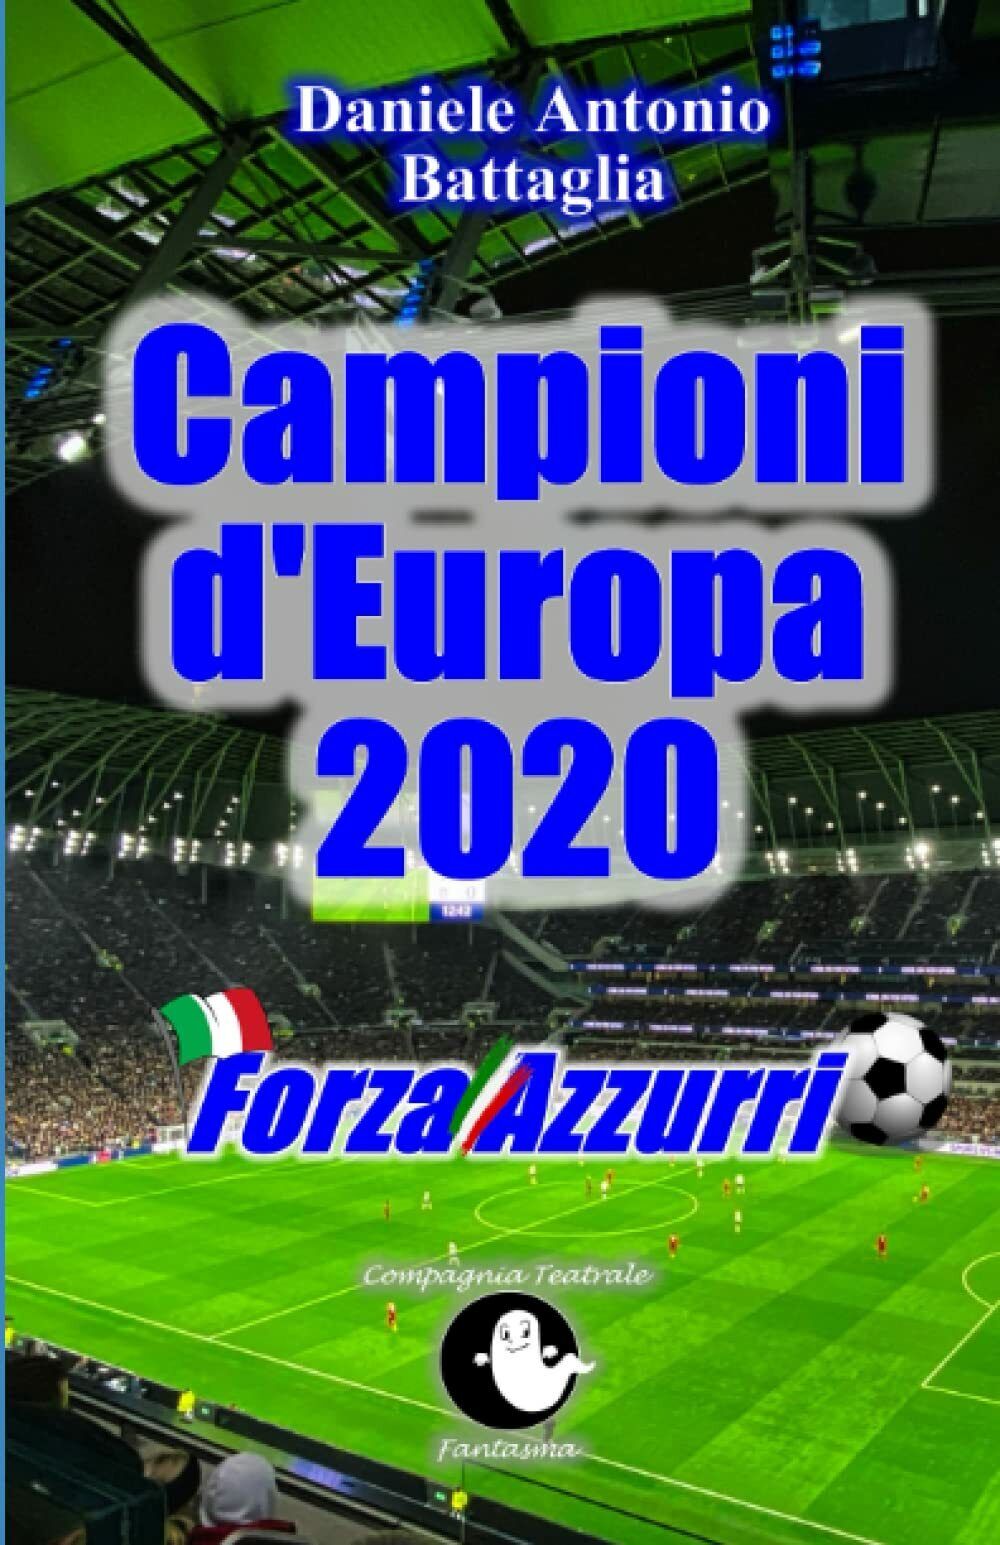 Forza Azzurri Campioni d'Europa 2020 - Daniele Antonio Battaglia - 2021